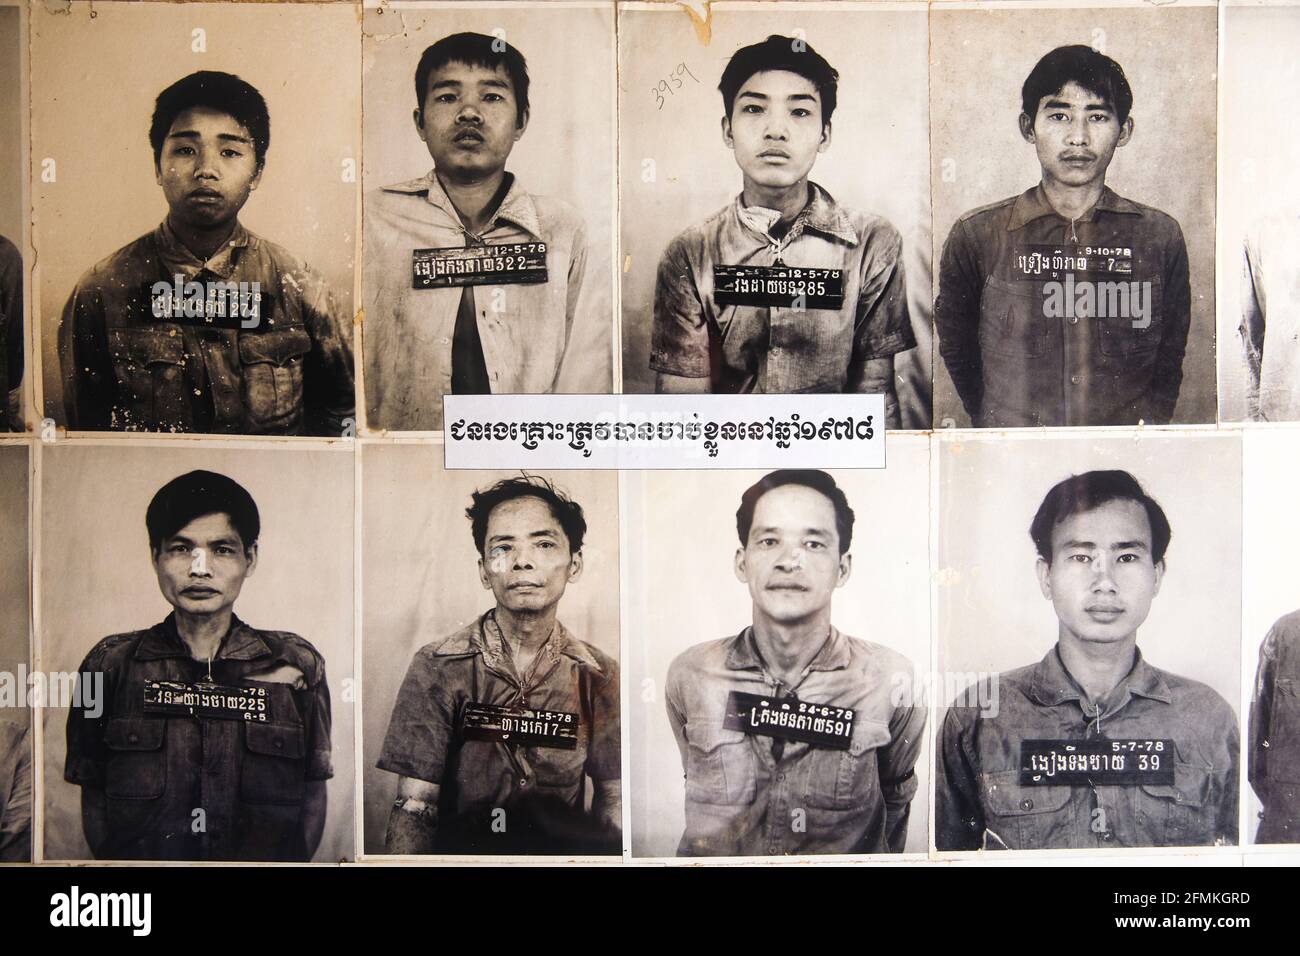 Fotos der Gefangenen im S21-Foltergefängnis in Phnom Penh Kambodscha Stockfoto